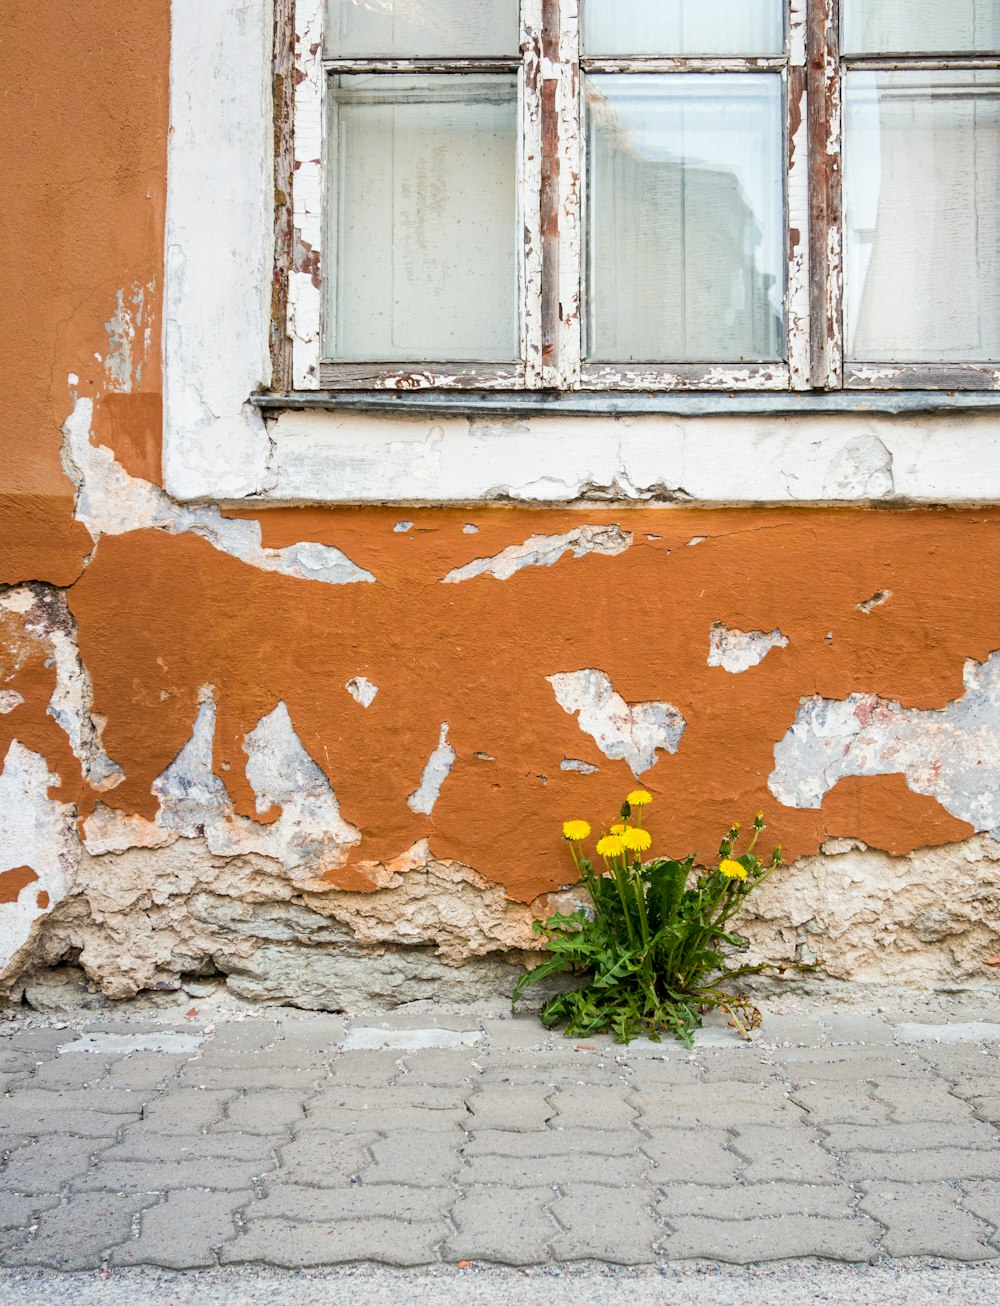 fiori gialli accanto al muro